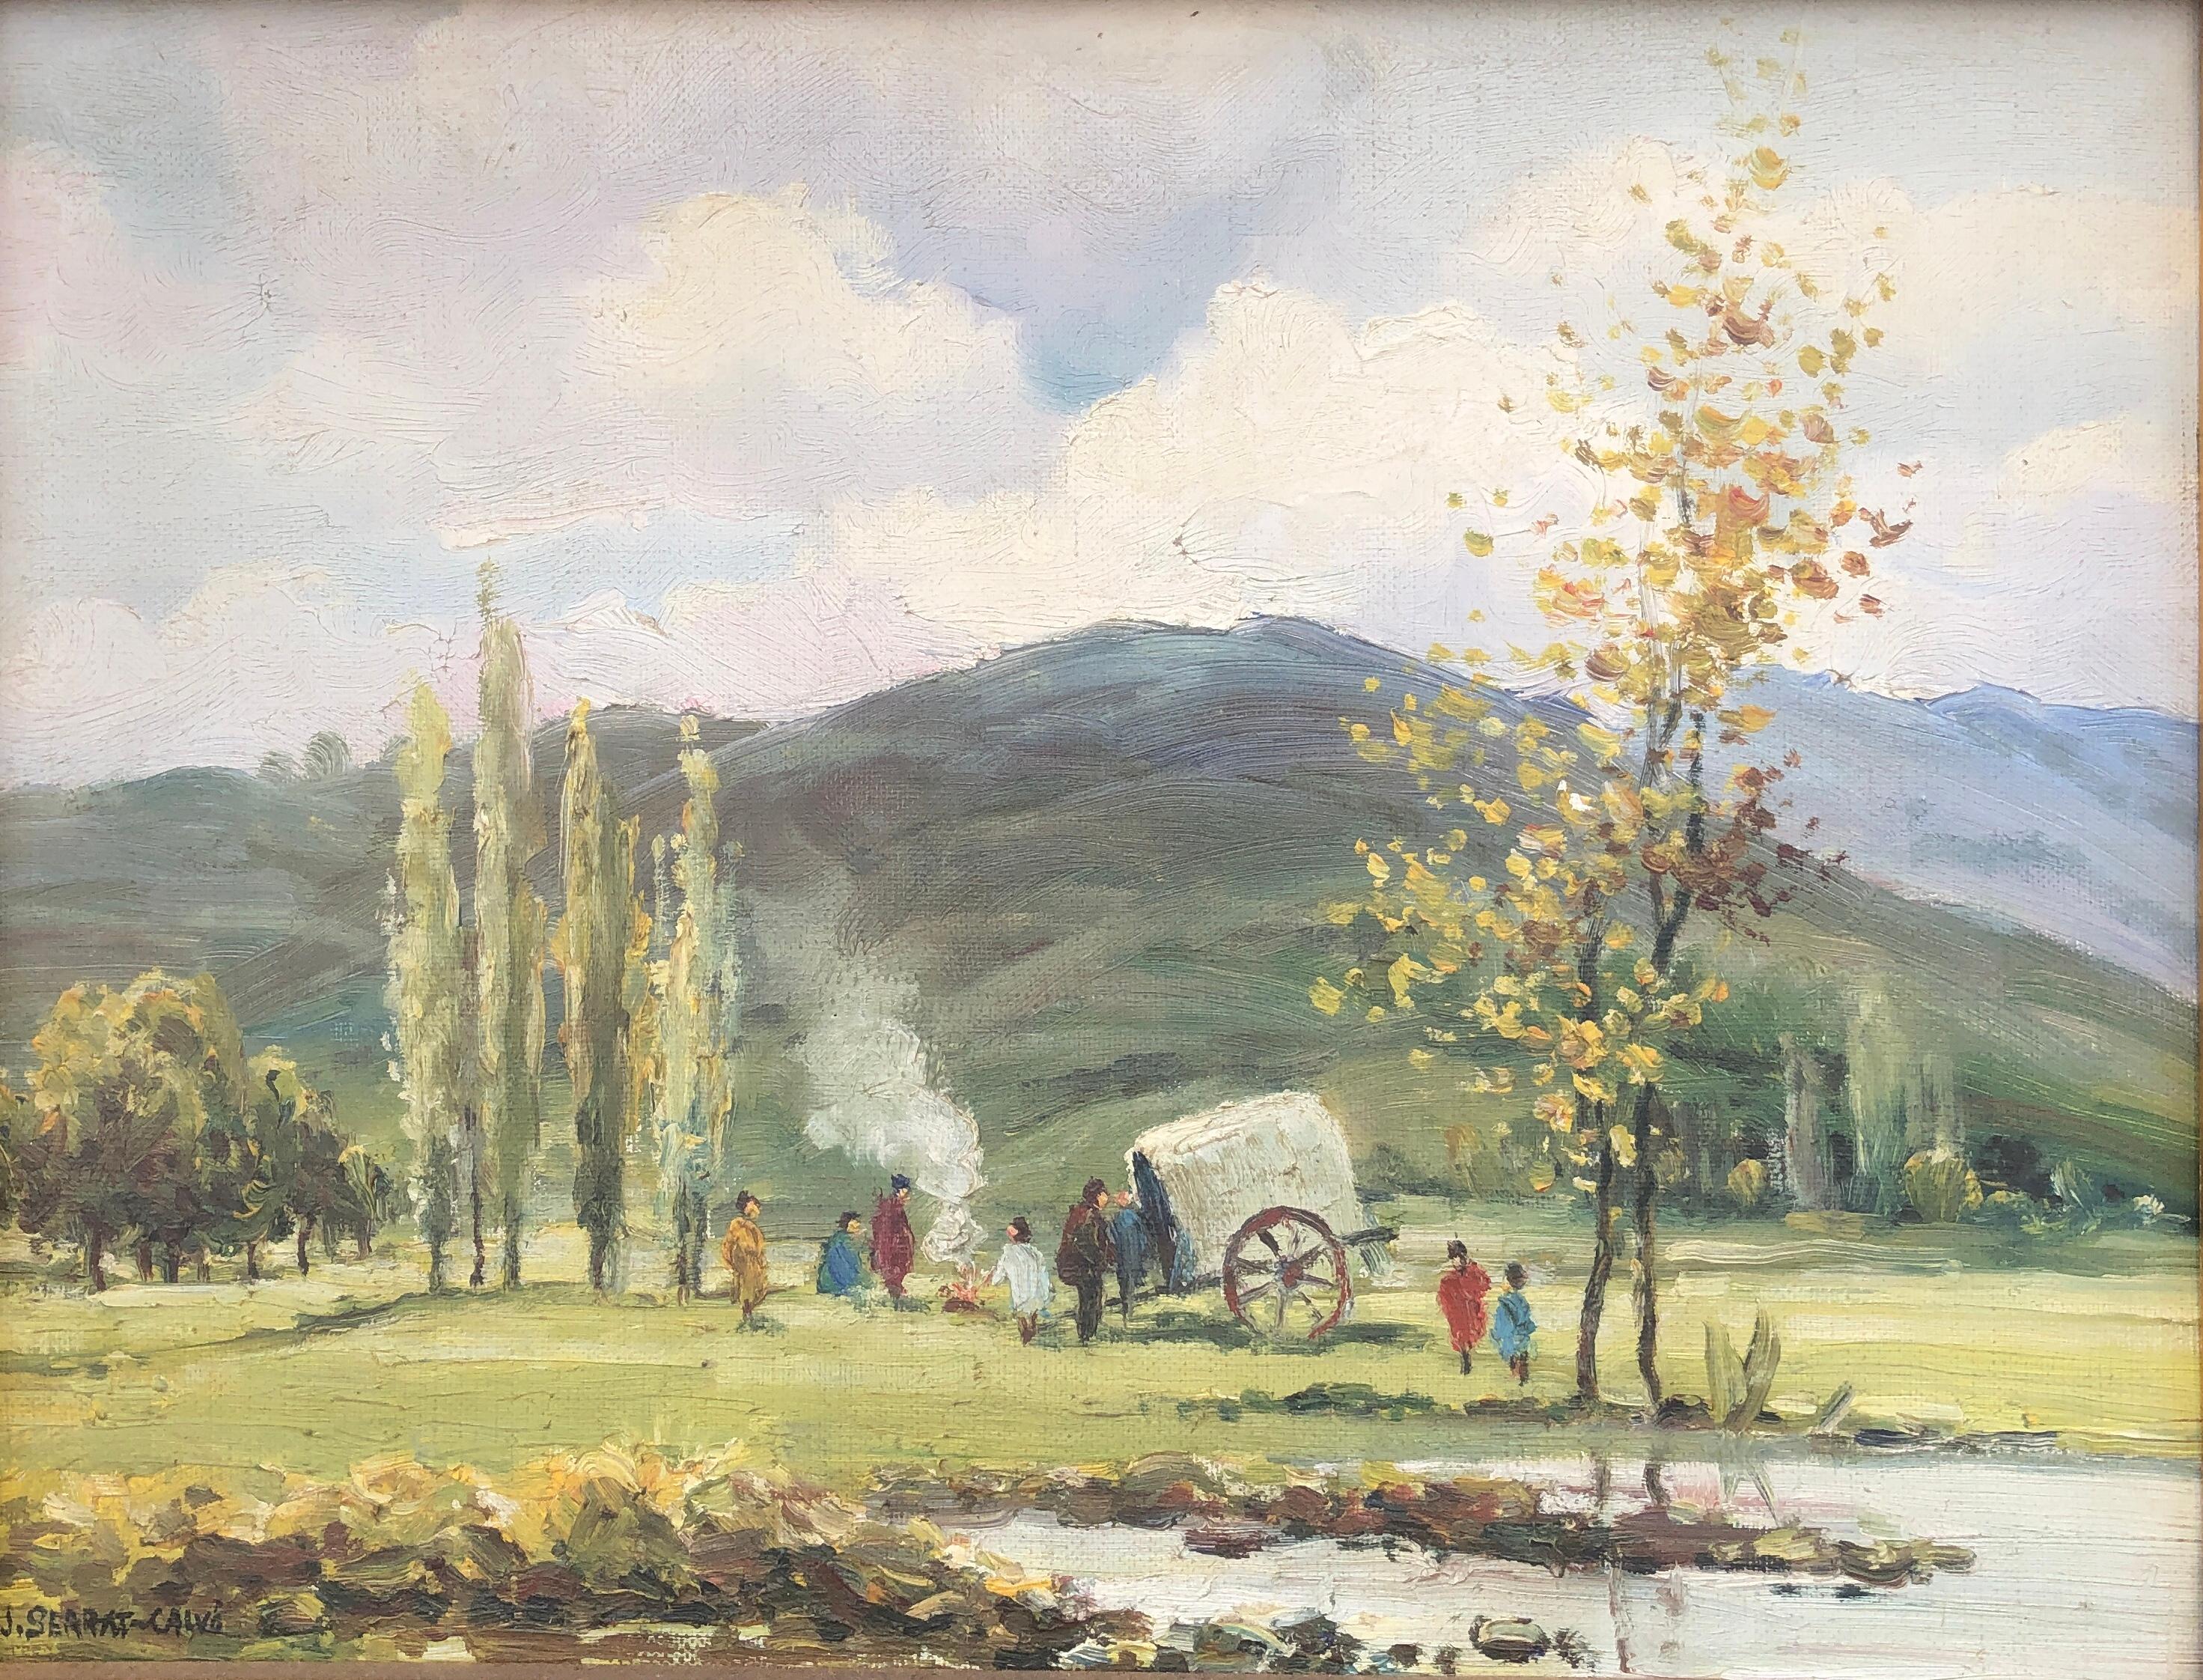 Gypsien in Fluss, Öl auf Leinwand, Gemälde spanische Landschaft 